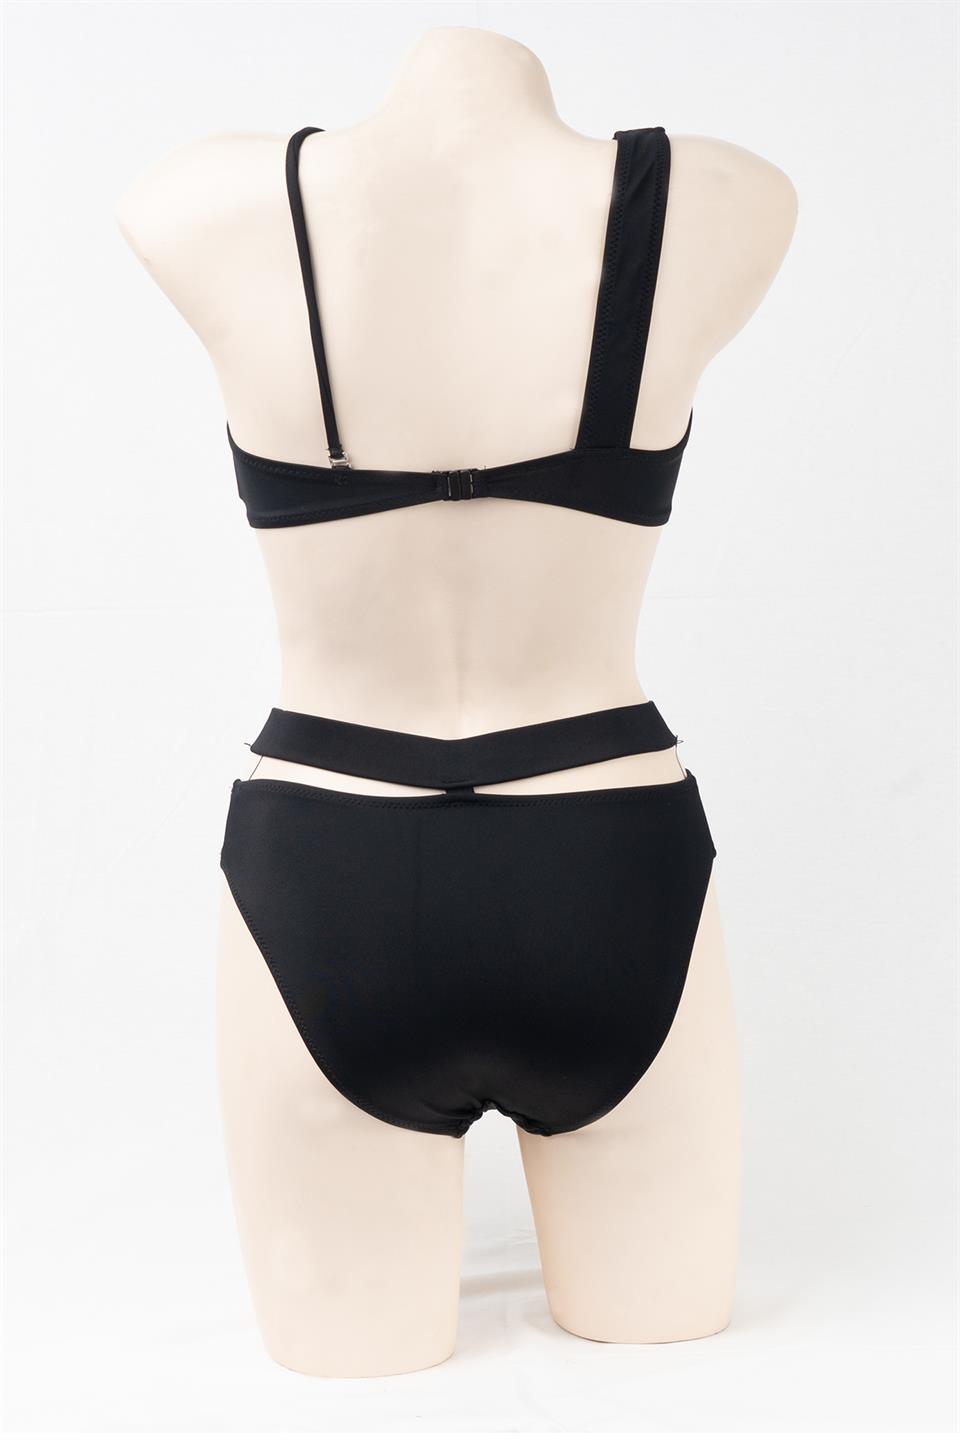 Eren Giyim SAILOR swimwear Kadın Tek Omuz Bikini TakımBikini Takımı